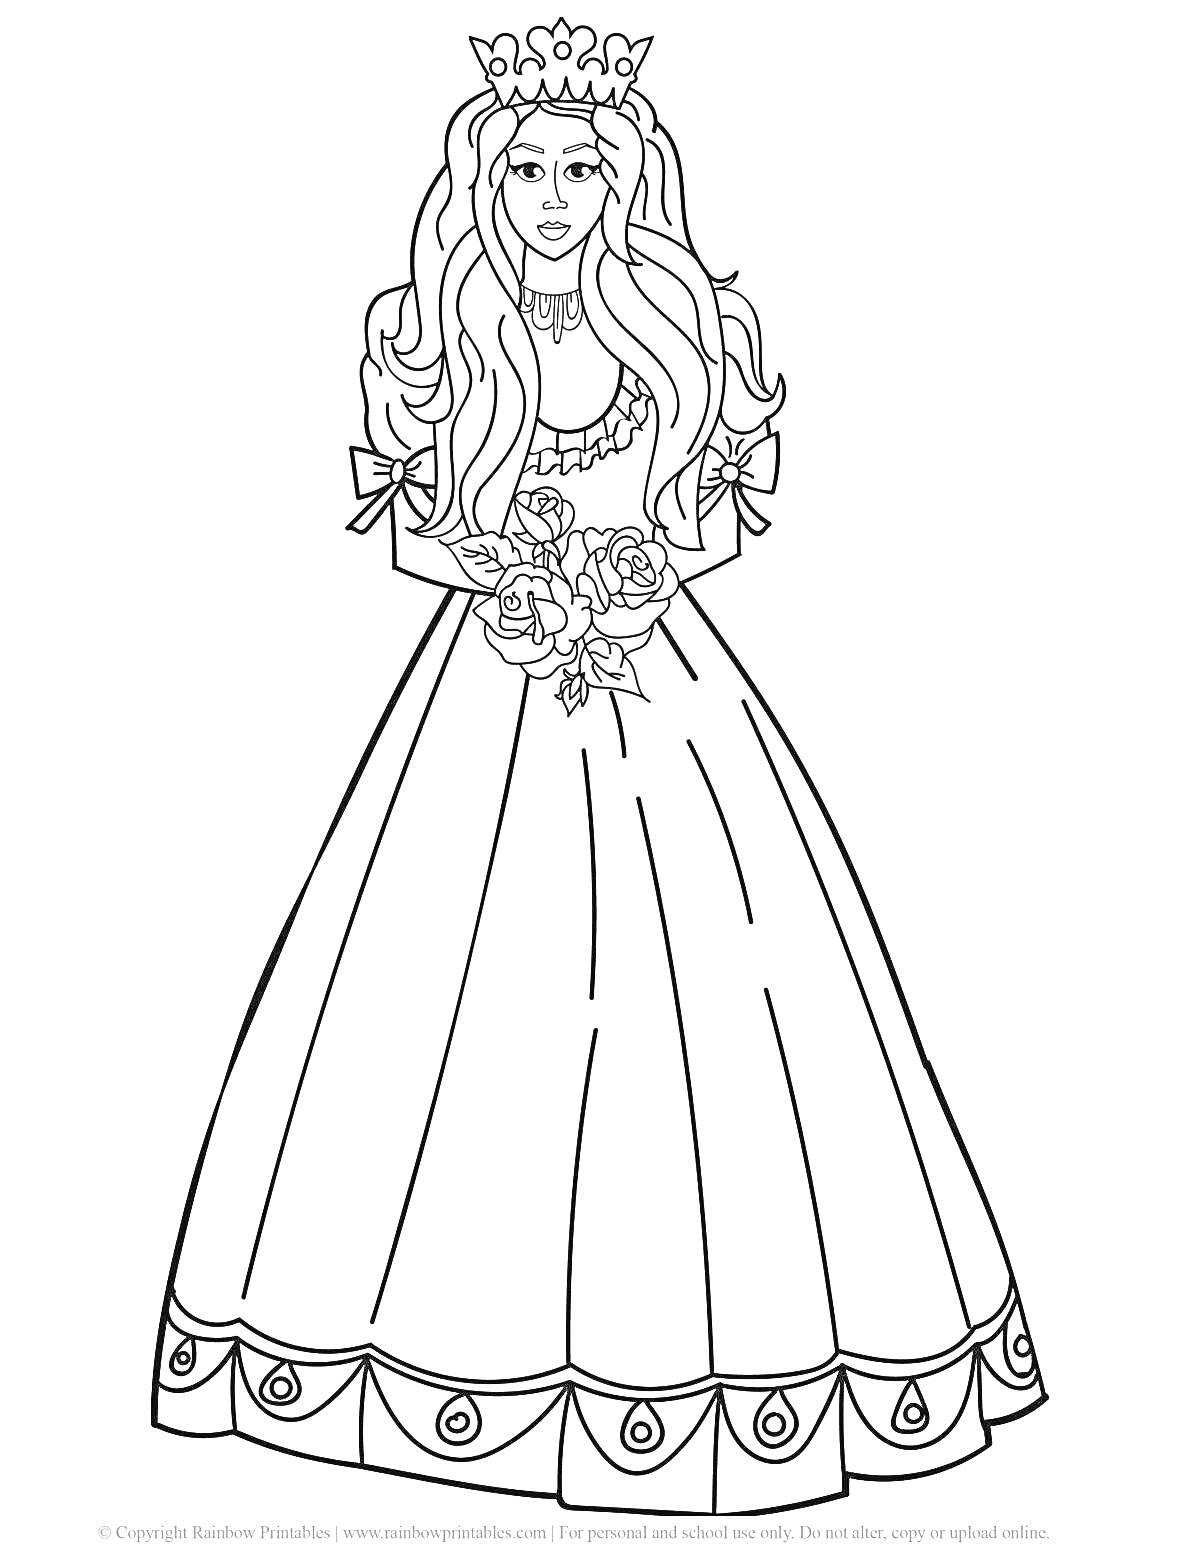 Раскраска Принцесса в длинном платье с короной на голове и букетом в руках